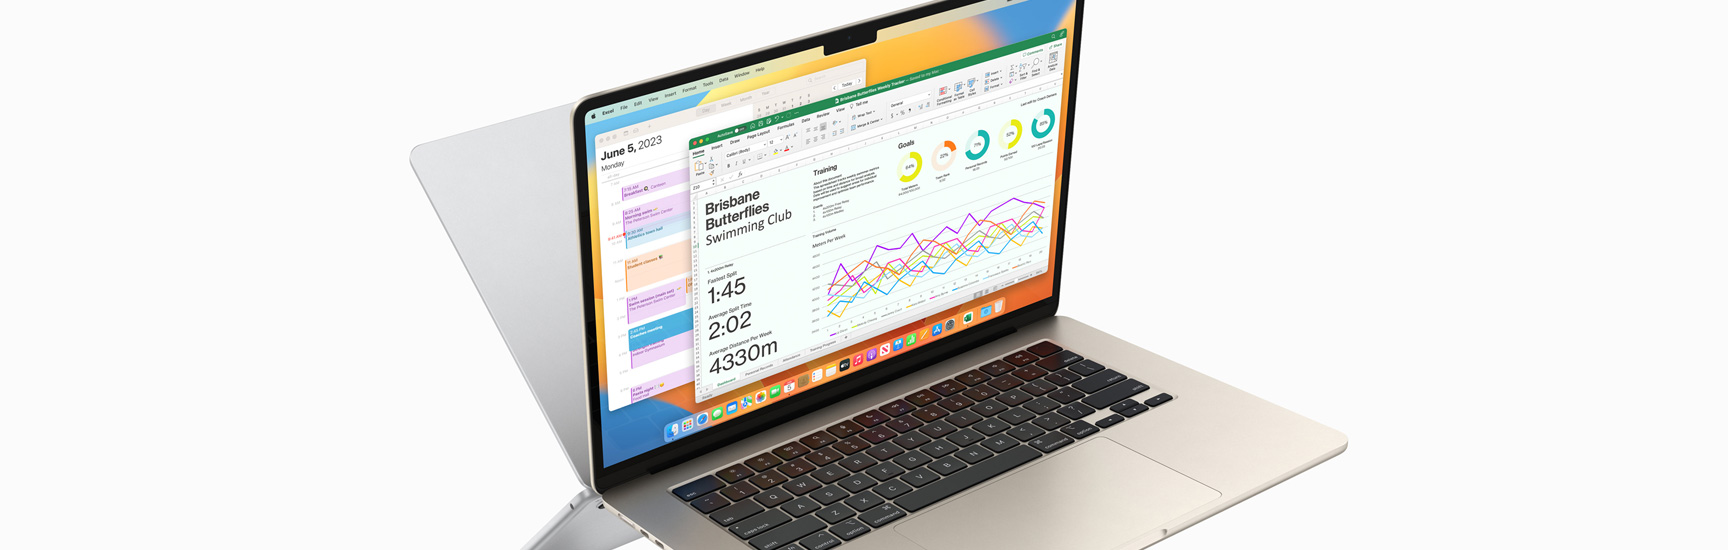 Kalender dan Microsoft Excel yang sedang berjalan di MacBook Air.